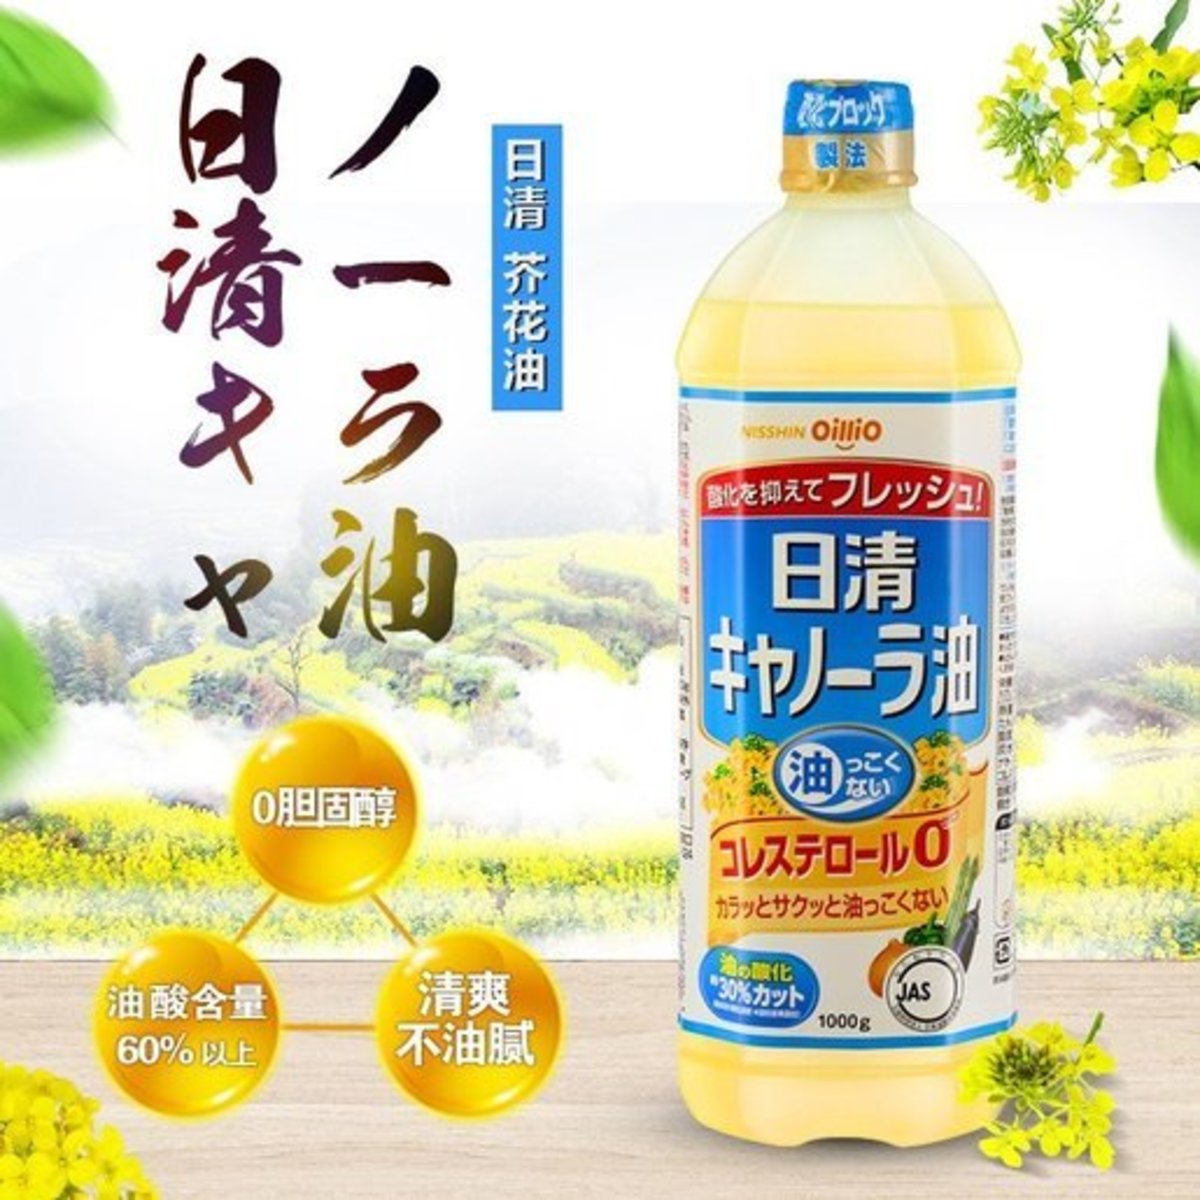 零膽固醇芥花籽油 (1,000g)｜原裝日本｜4902380135845 (最少60日食用期)